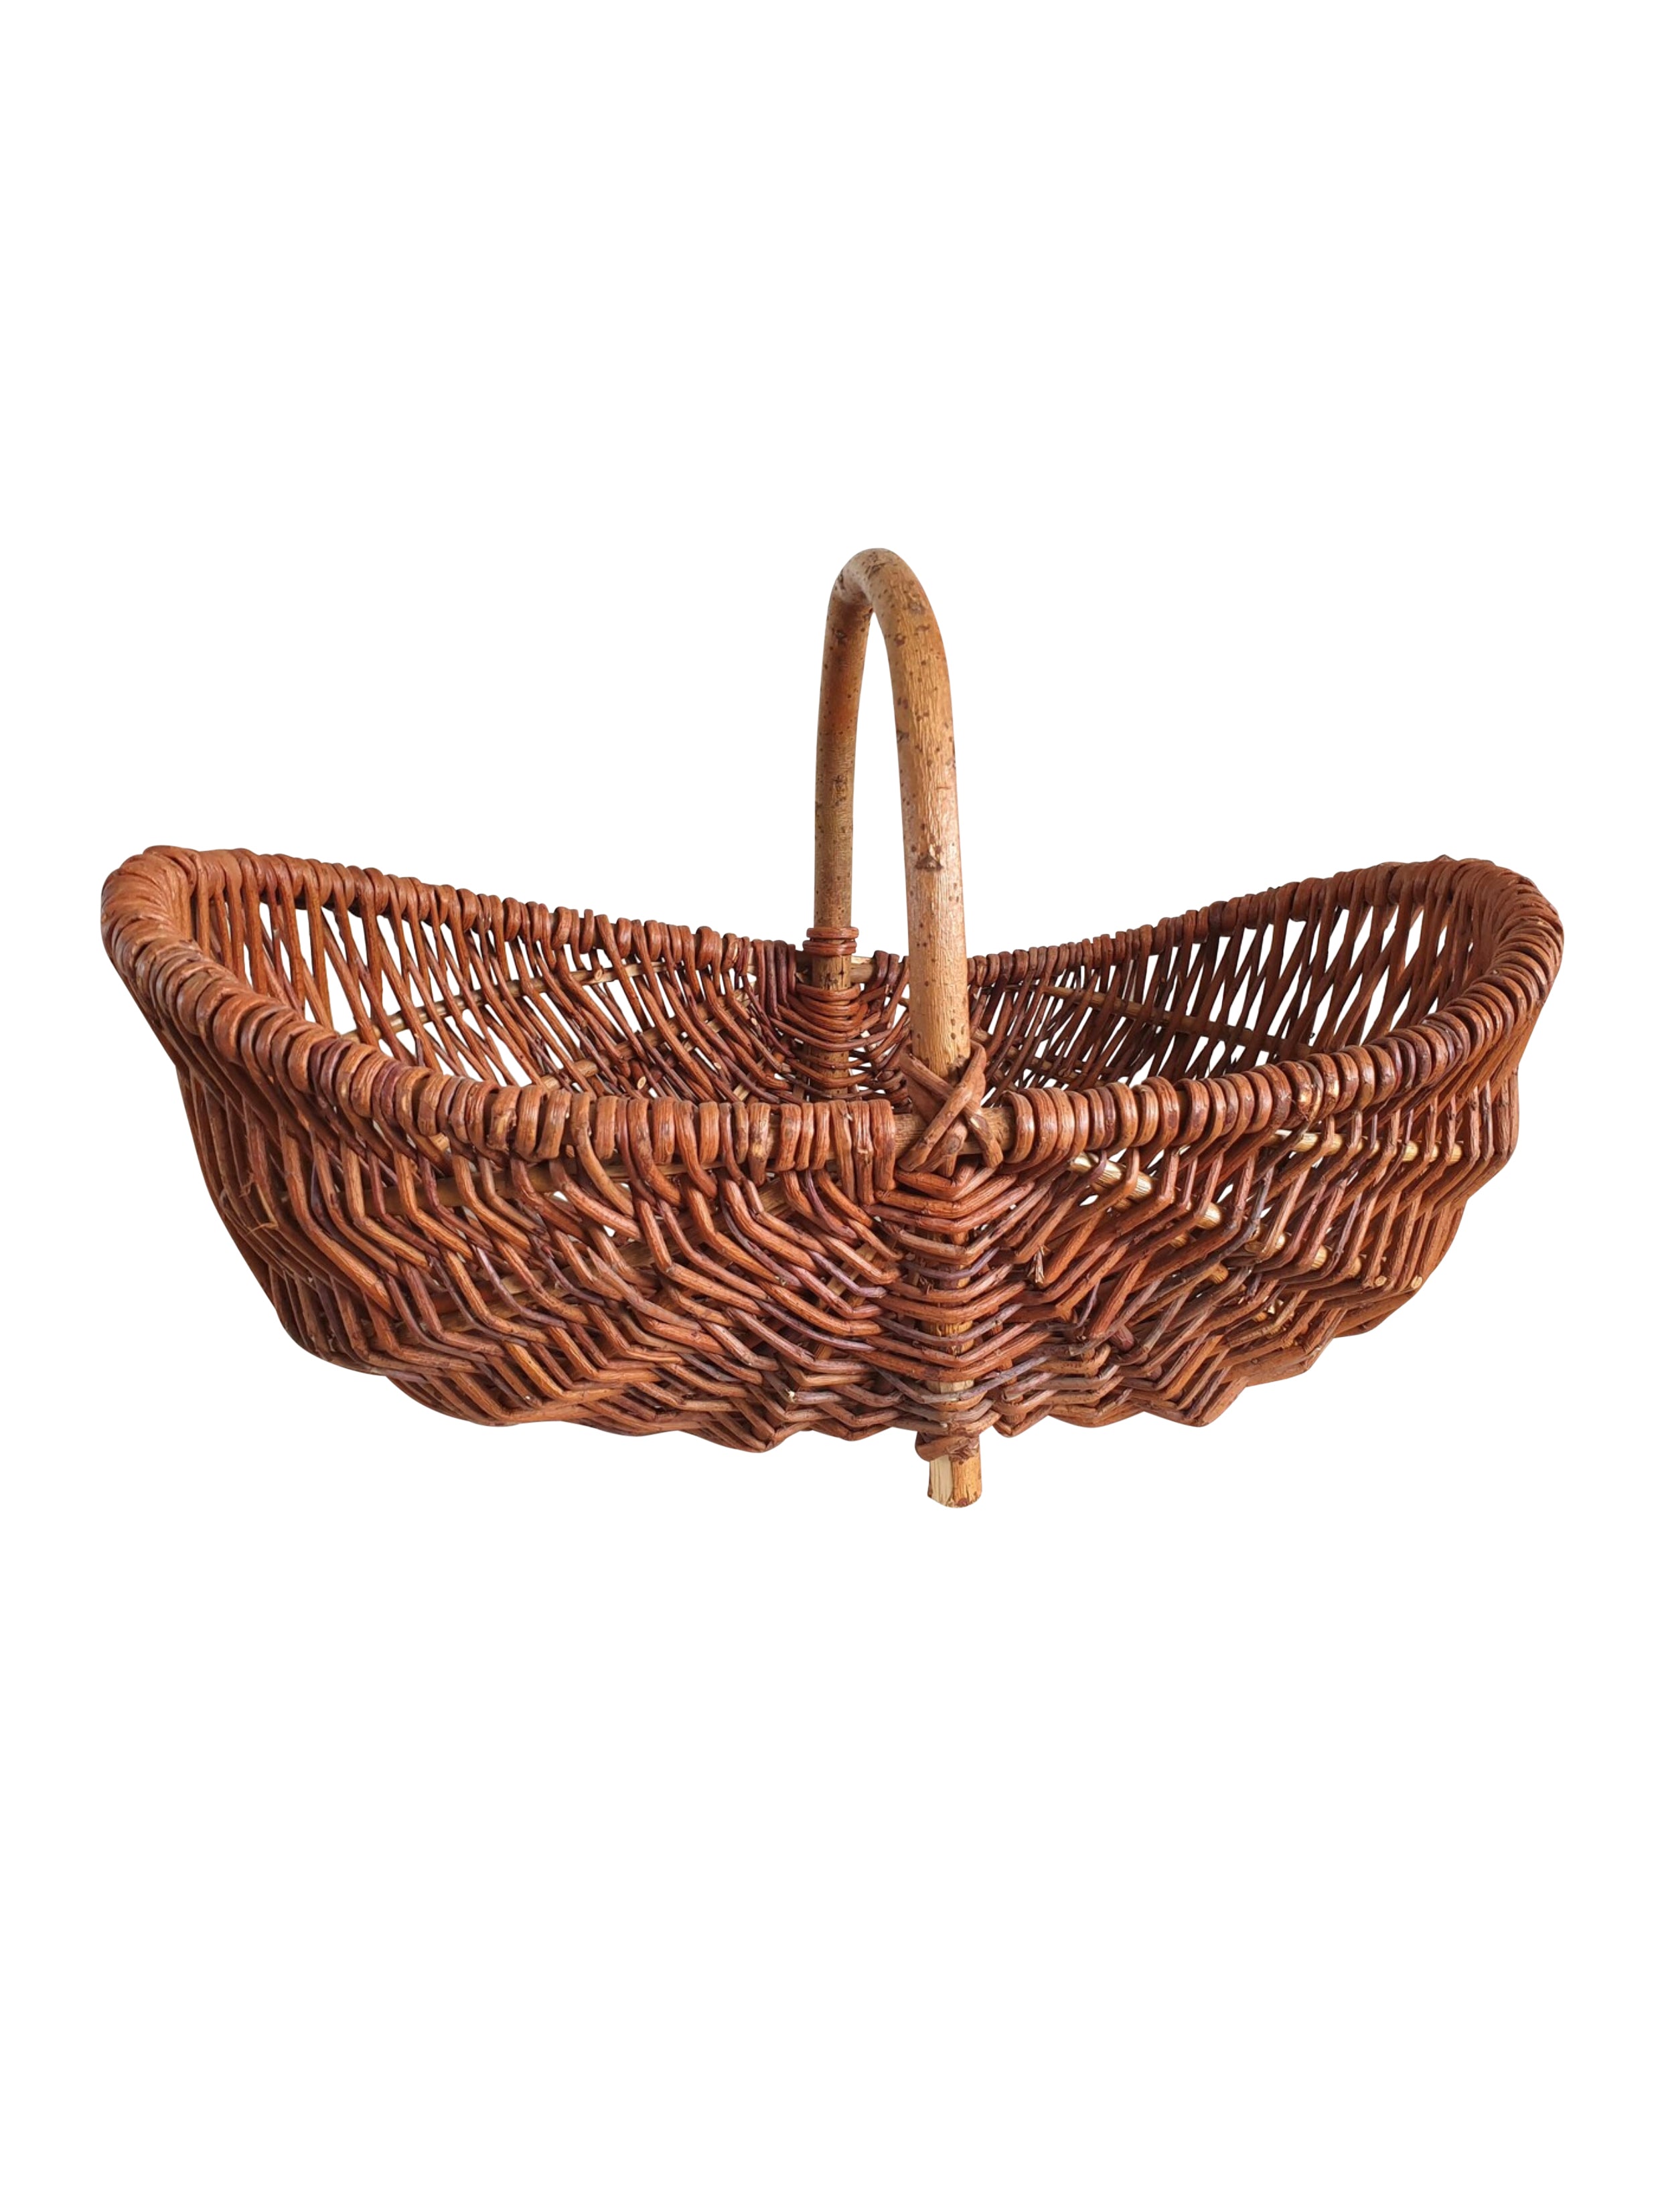 Vintage 1950s French Market Basket